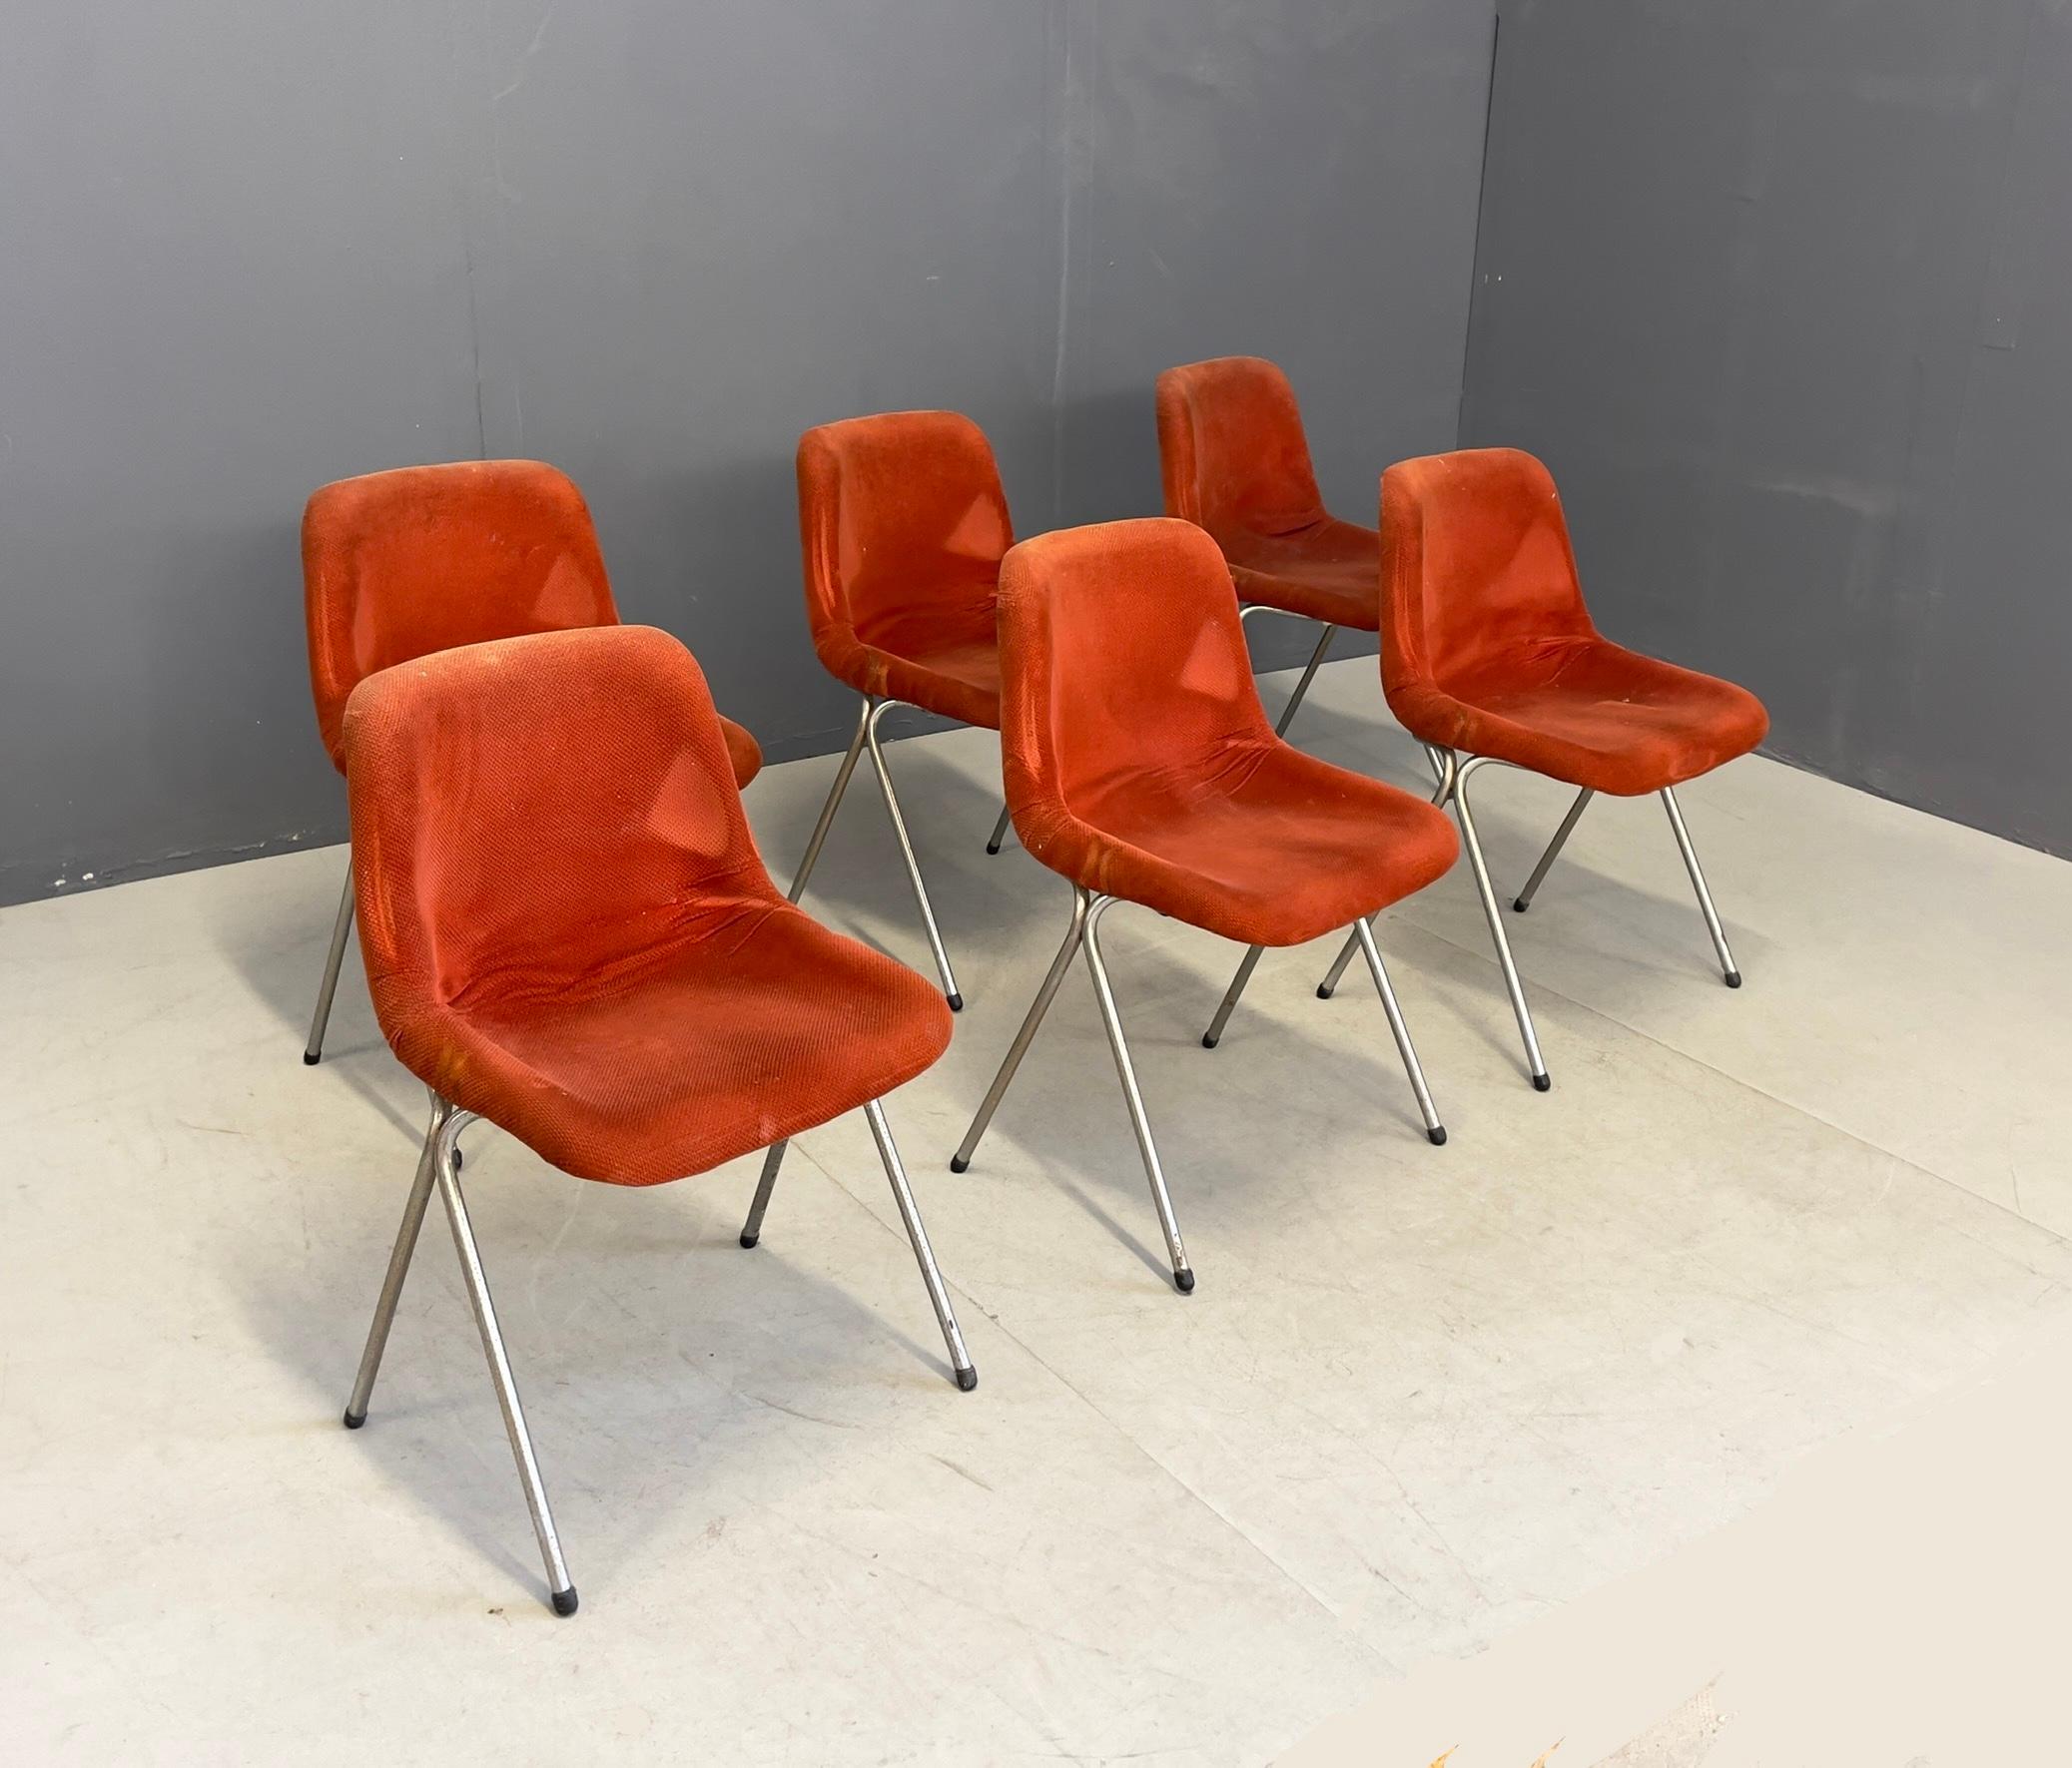 Sechs Stühle mit verchromtem Metallgestell, Kunststoff und roter Stoffpolsterung. Italienische Herstellung. 1960s.